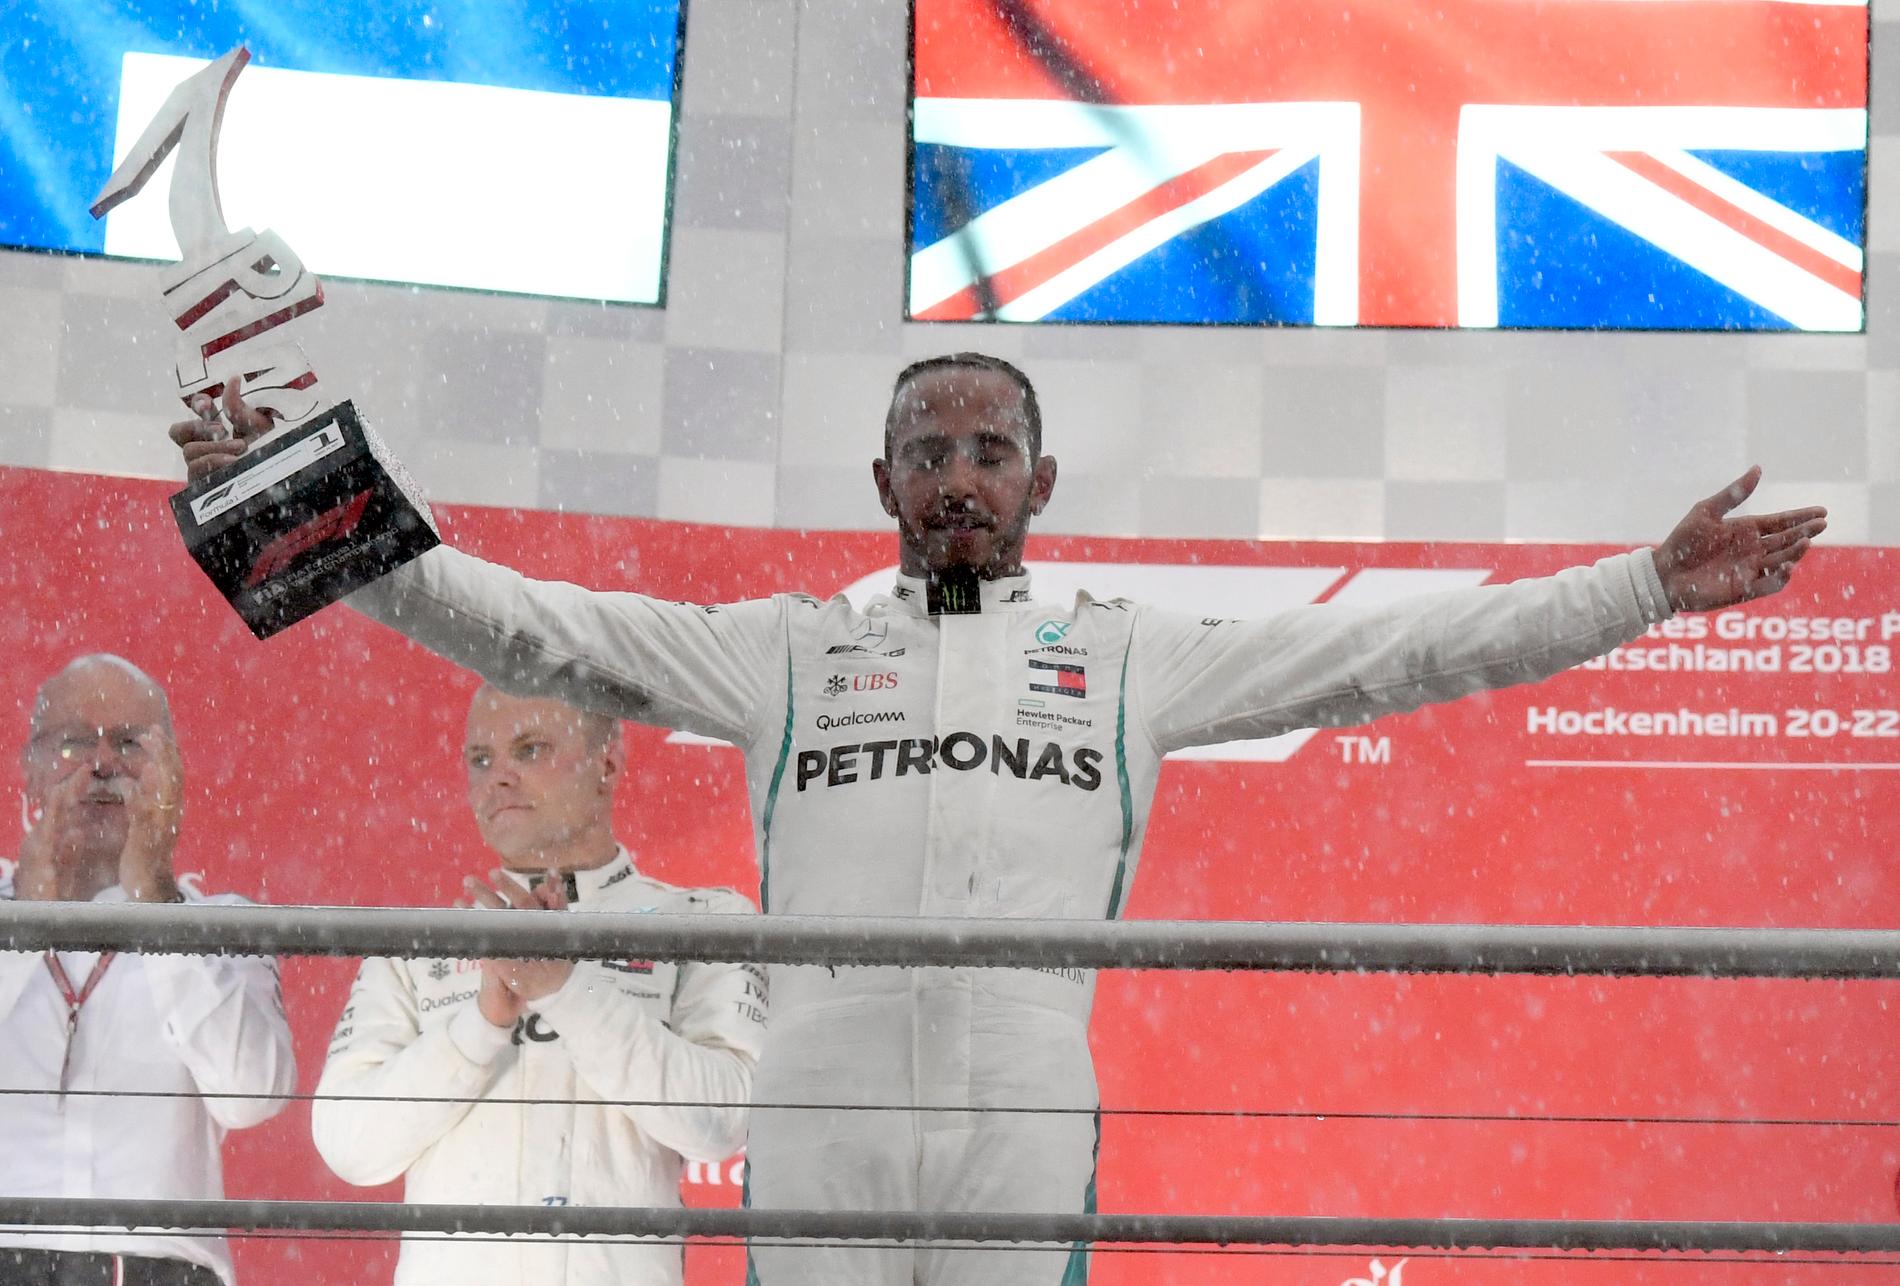 Regnet vräkte ner efter målgången. En blöt men lycklig Lewis Hamilton kunde fira på prispallen.